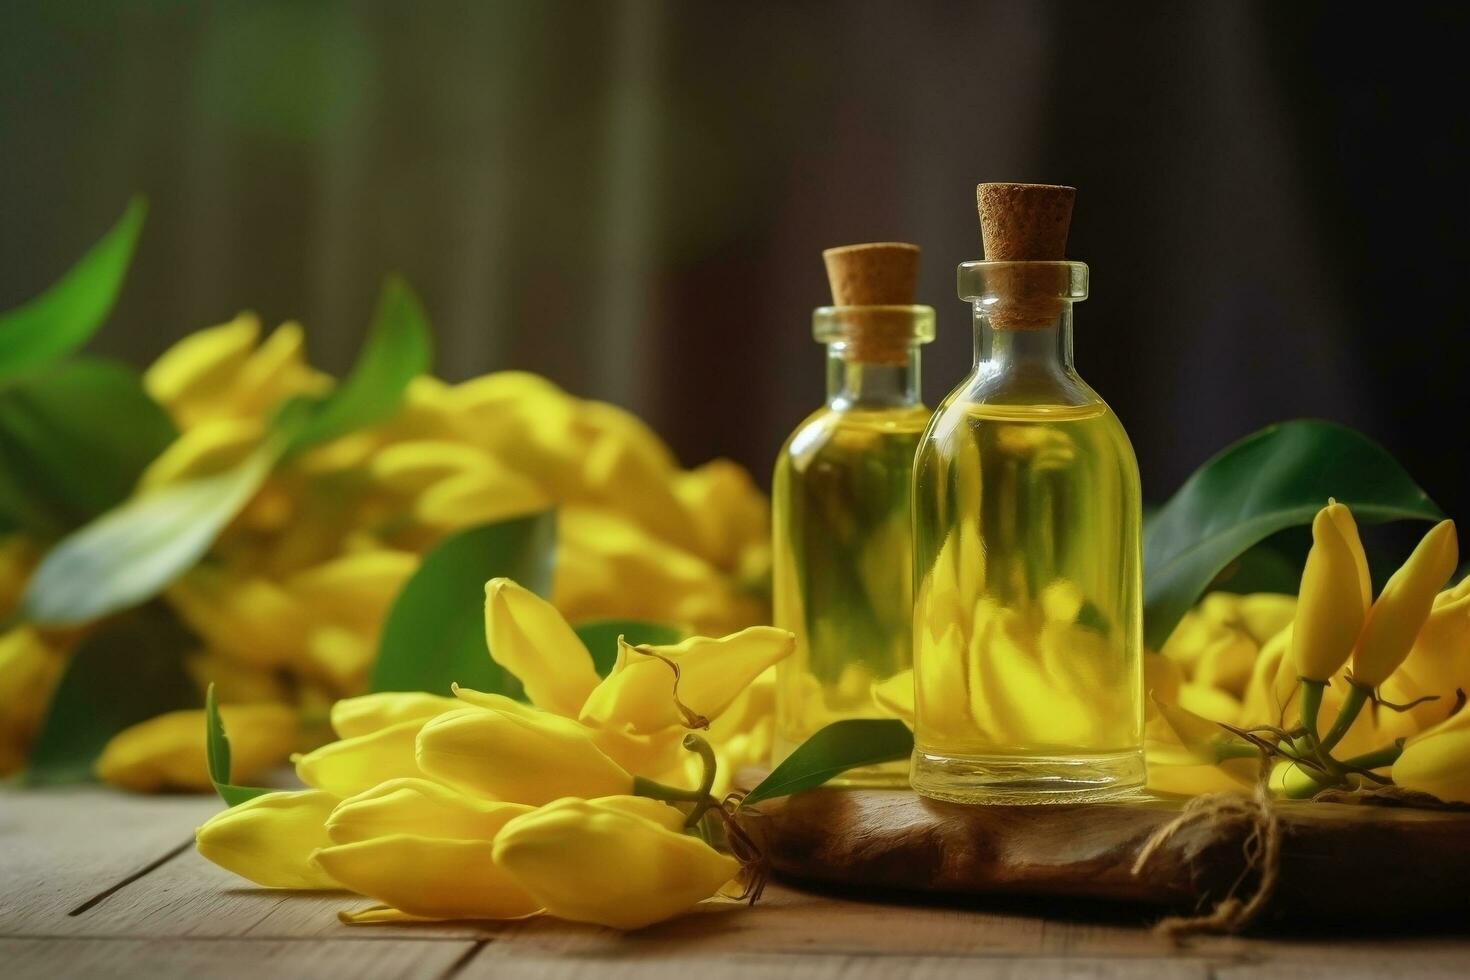 ylang ylang or cananga odorata flower essential oil alongside ylang ylang or cananga odorata flower on a table photo